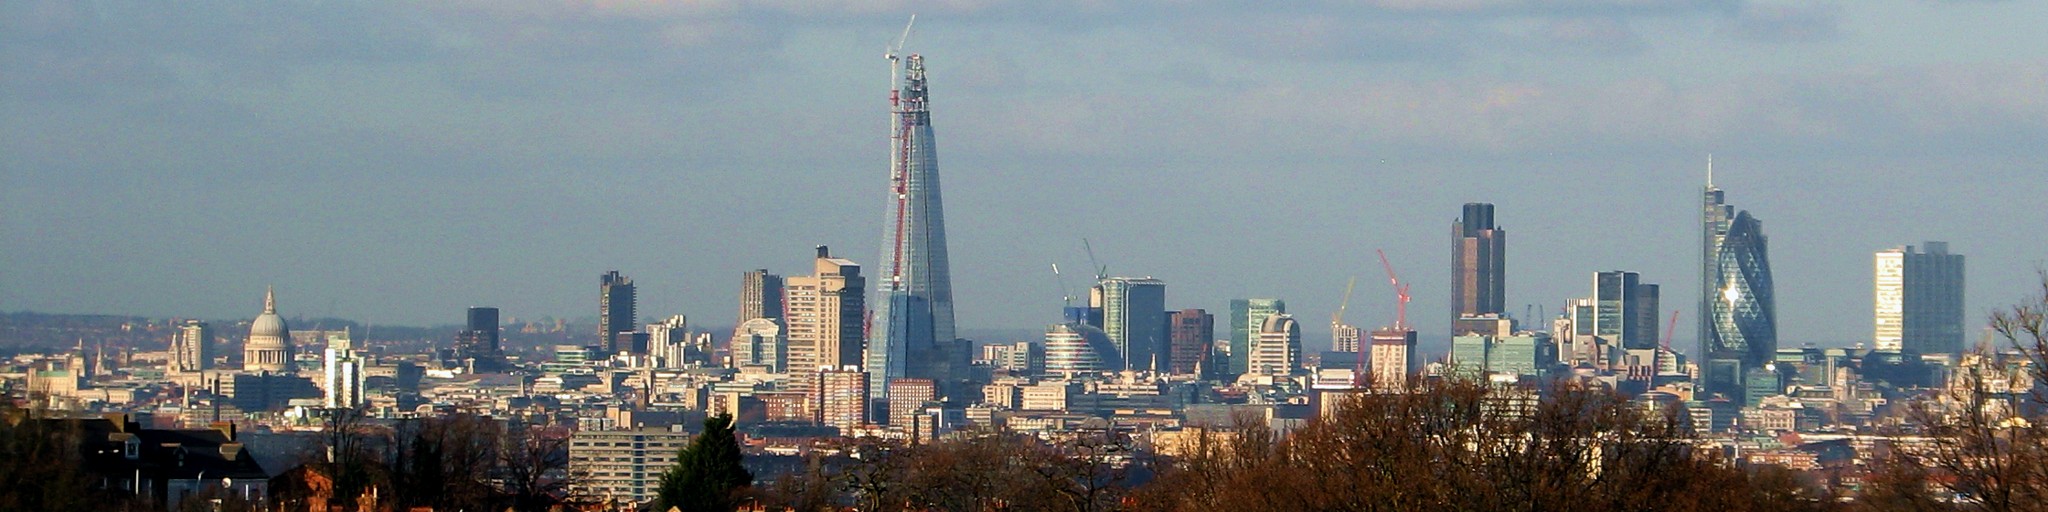 File:Horniman London skyline.jpg